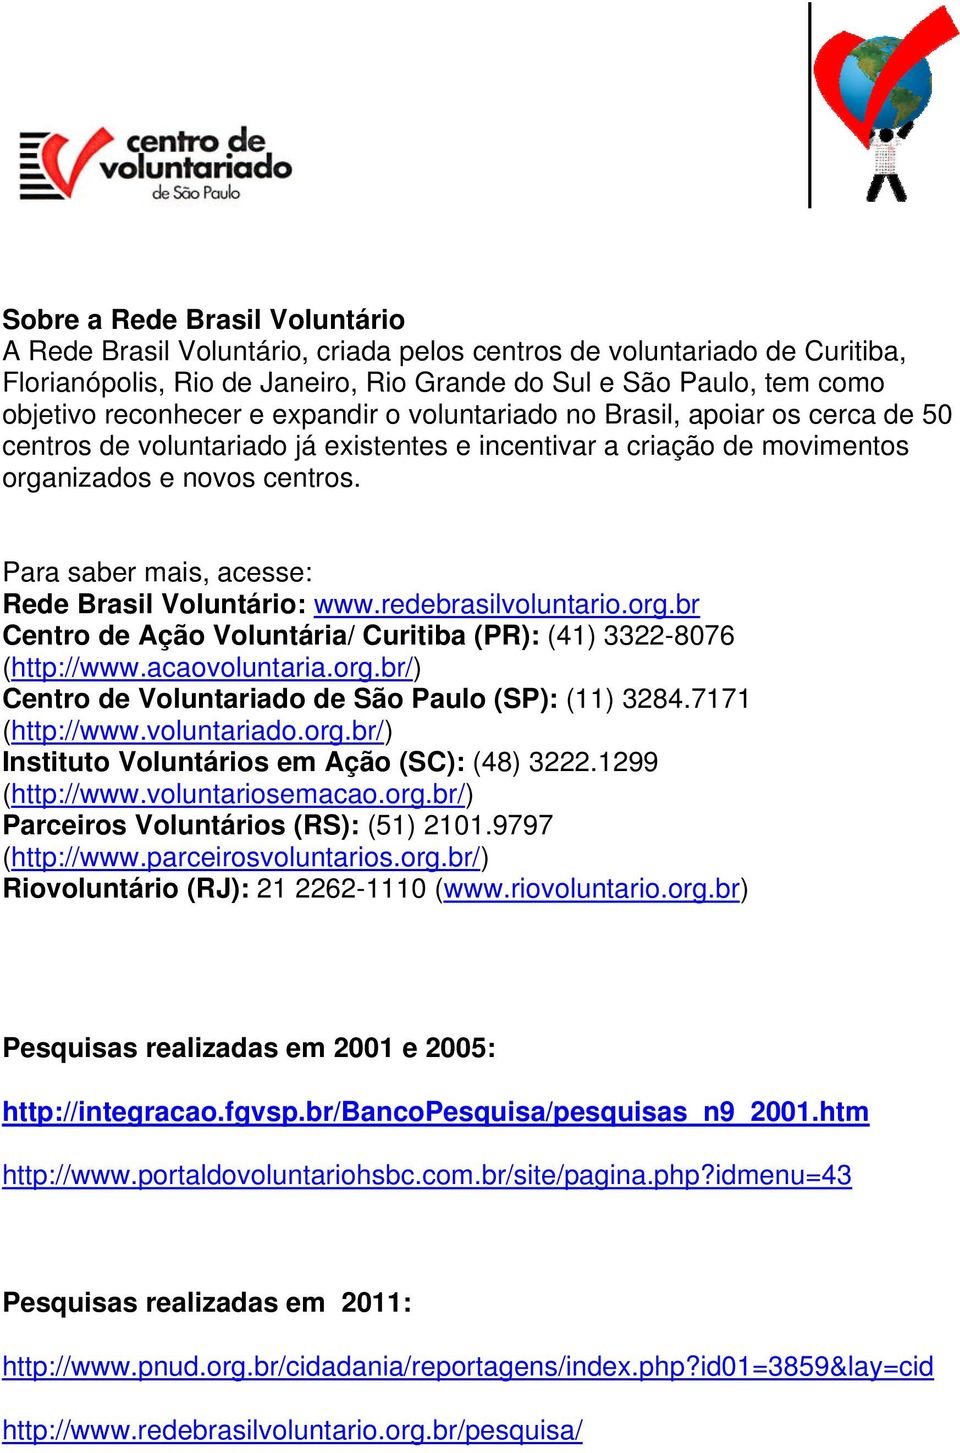 Para saber mais, acesse: Rede Brasil Voluntário: www.redebrasilvoluntario.org.br Centro de Ação Voluntária/ Curitiba (PR): (41) 3322-8076 (http://www.acaovoluntaria.org.br/) Centro de Voluntariado de São Paulo (SP): (11) 3284.